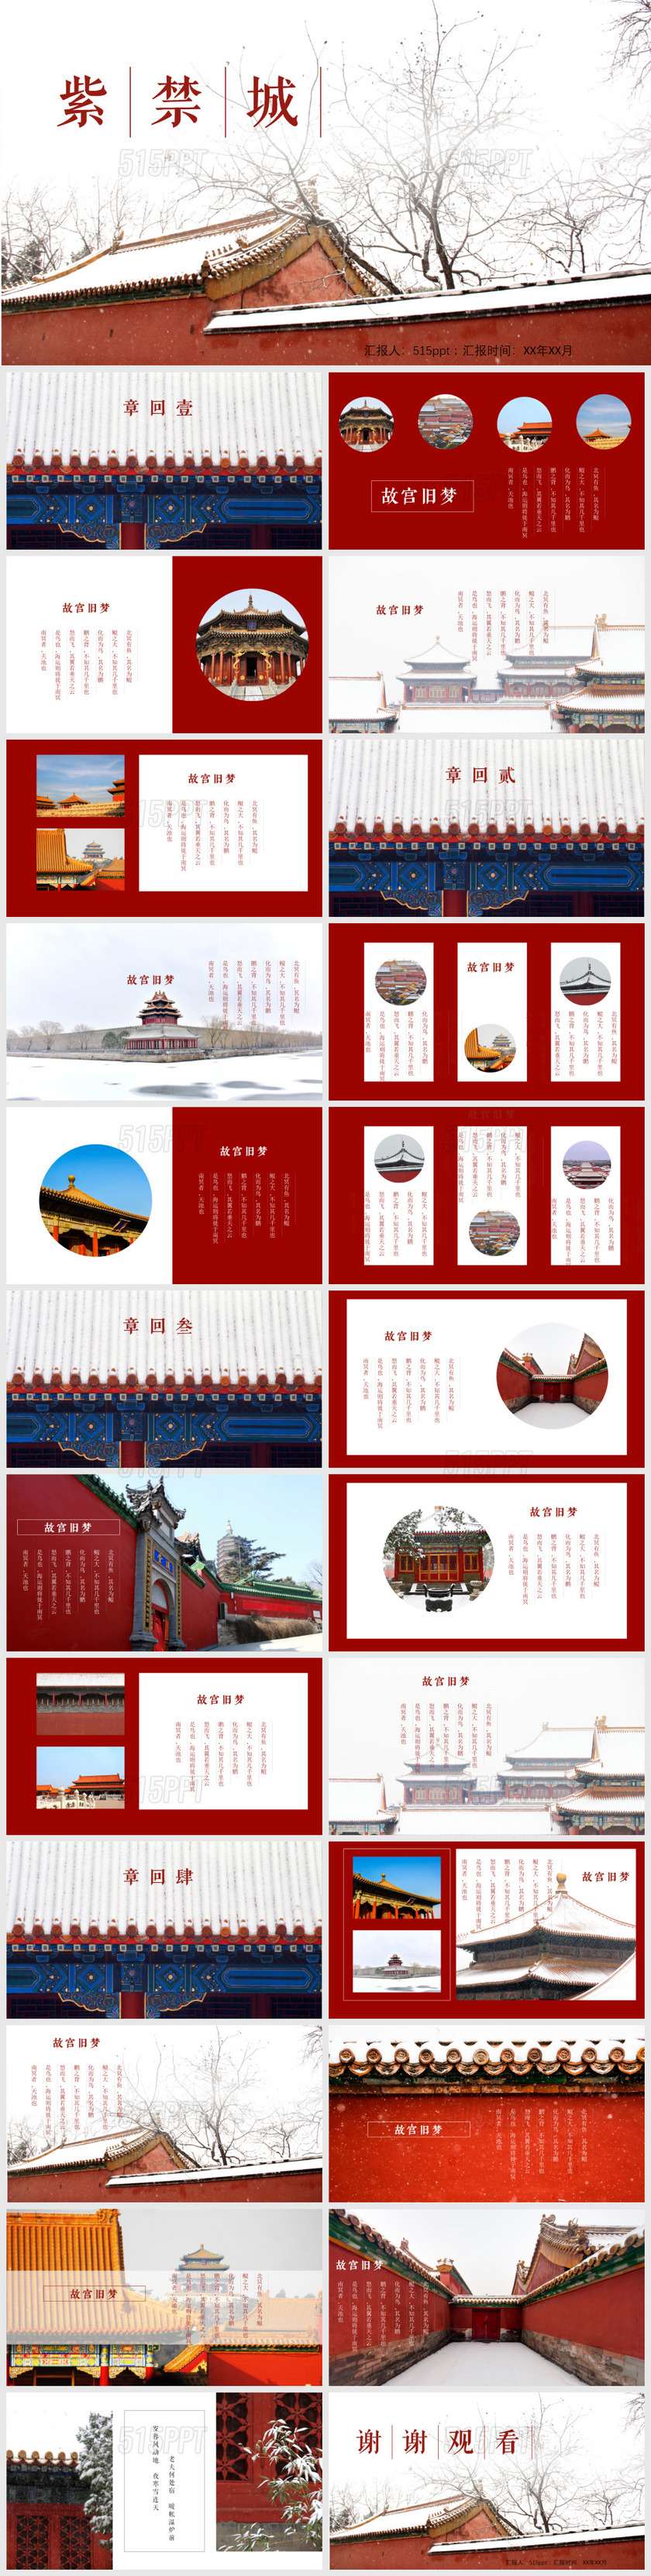 红色杂志风紫禁城故宫旅游相册宣传PPT旅游宣传一